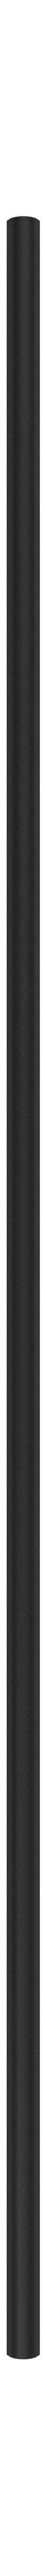 Moebe Regalsystem/Wandregalbein 115 cm, schwarz